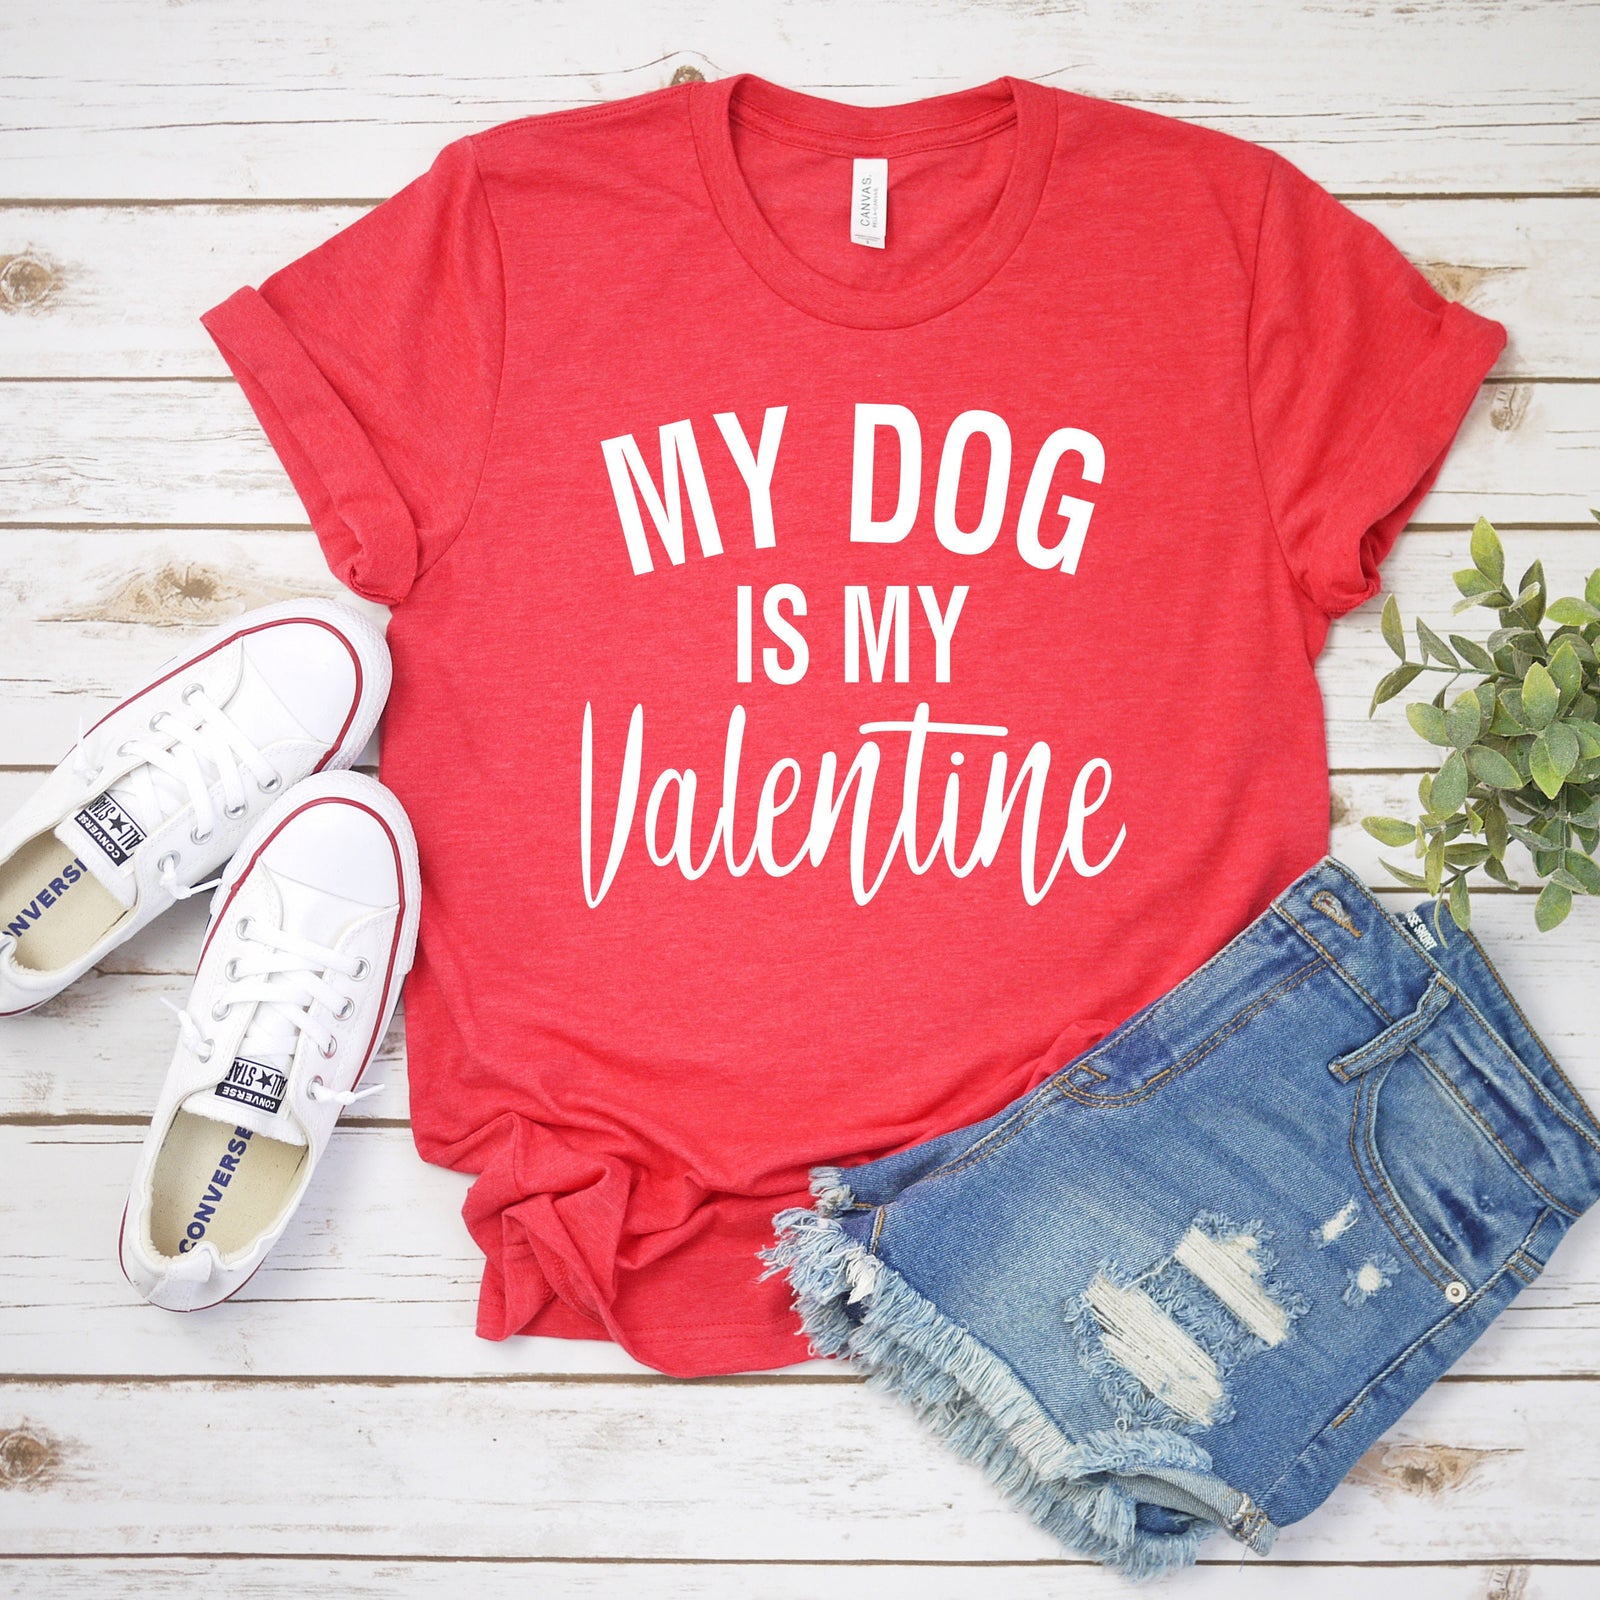 My Dog is My Valentine- Funny Valentine Shirt - Pet Lover Valentine Shirt - Unisex Adult Valentine's Day Shirt - Valentines Day Gift